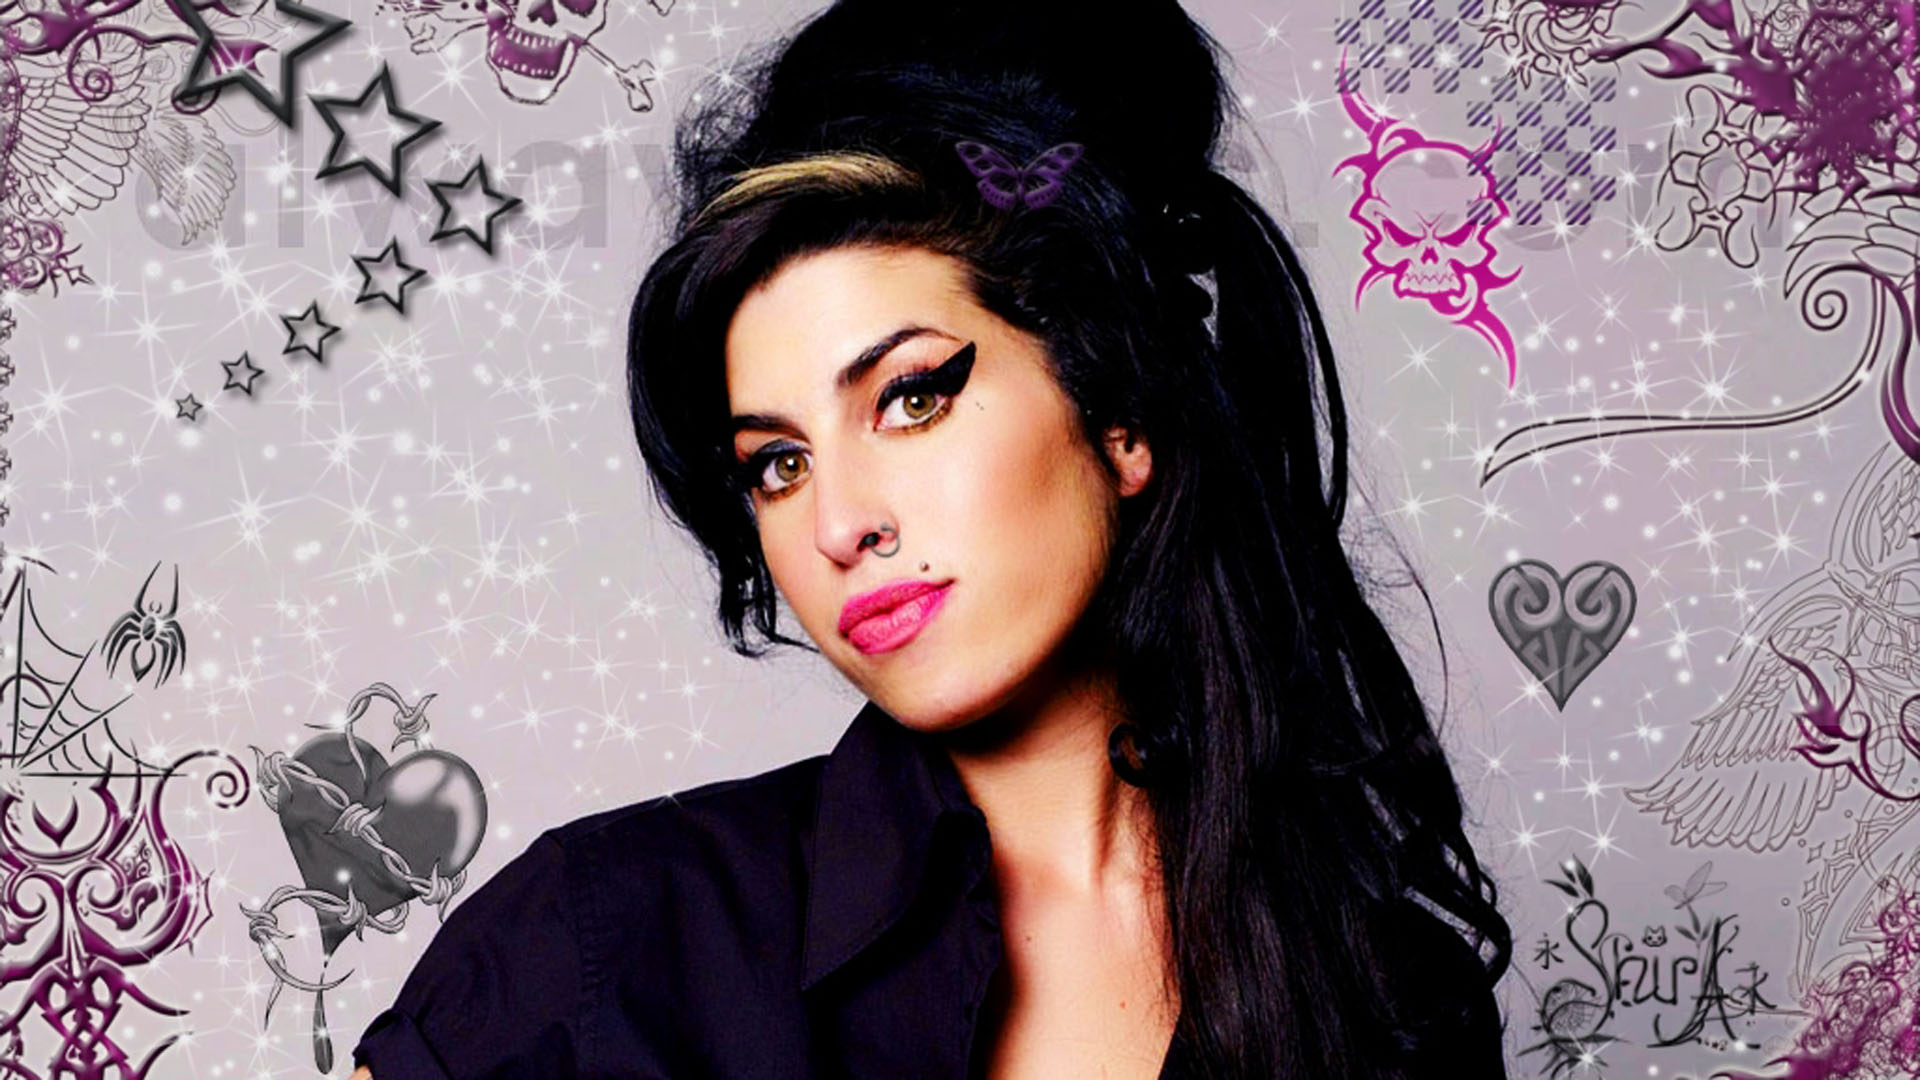 La familia de Winehouse dará el visto bueno final del show, que probablemente dure entre 75 y 110 minutos